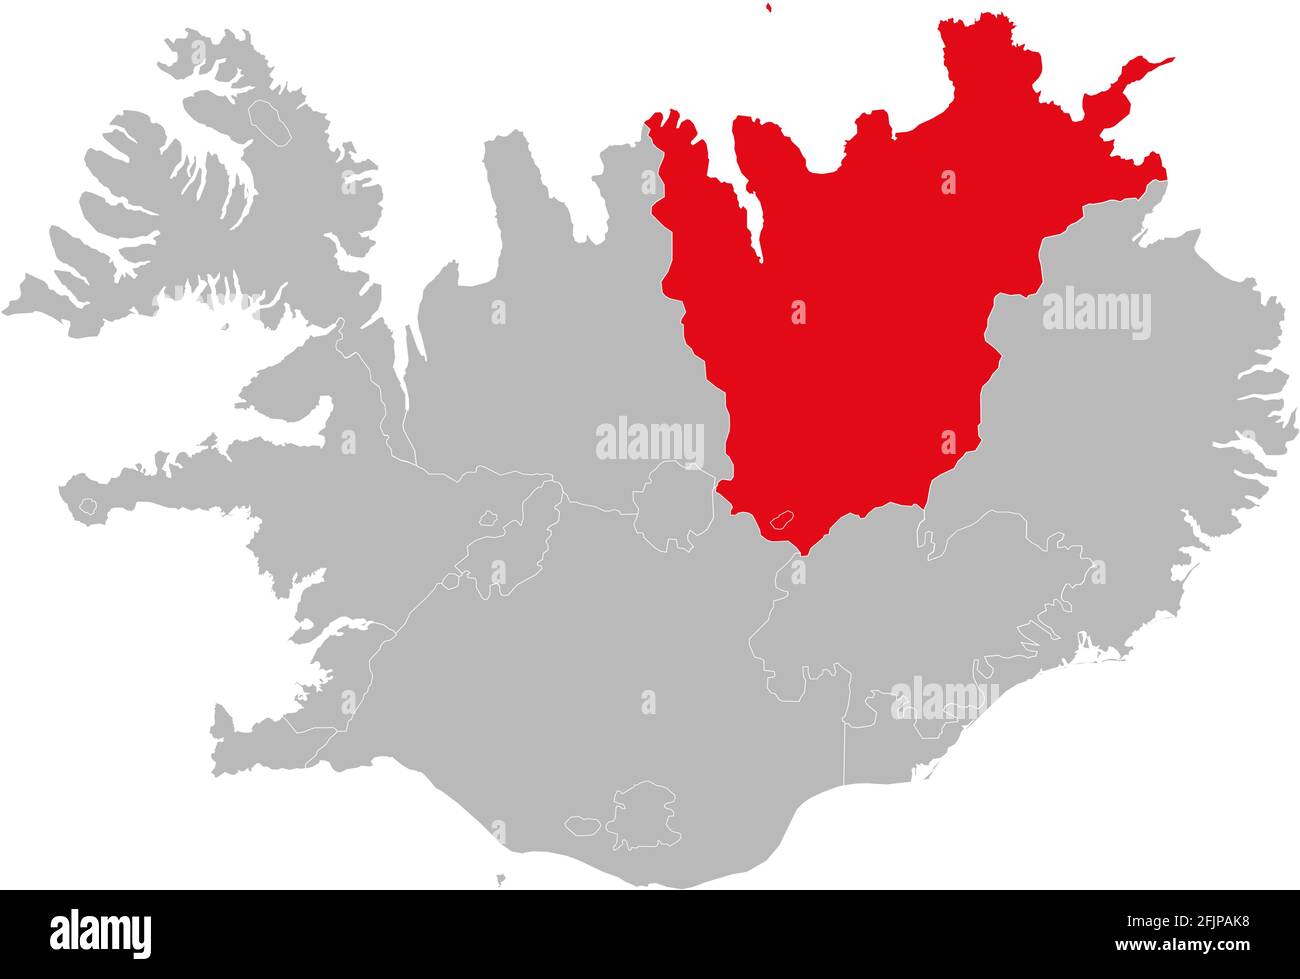 Nordurland Eystra Provinzen isoliert auf Island Karte. Grauer Hintergrund. Hintergründe und Hintergrundbilder. Stock Vektor